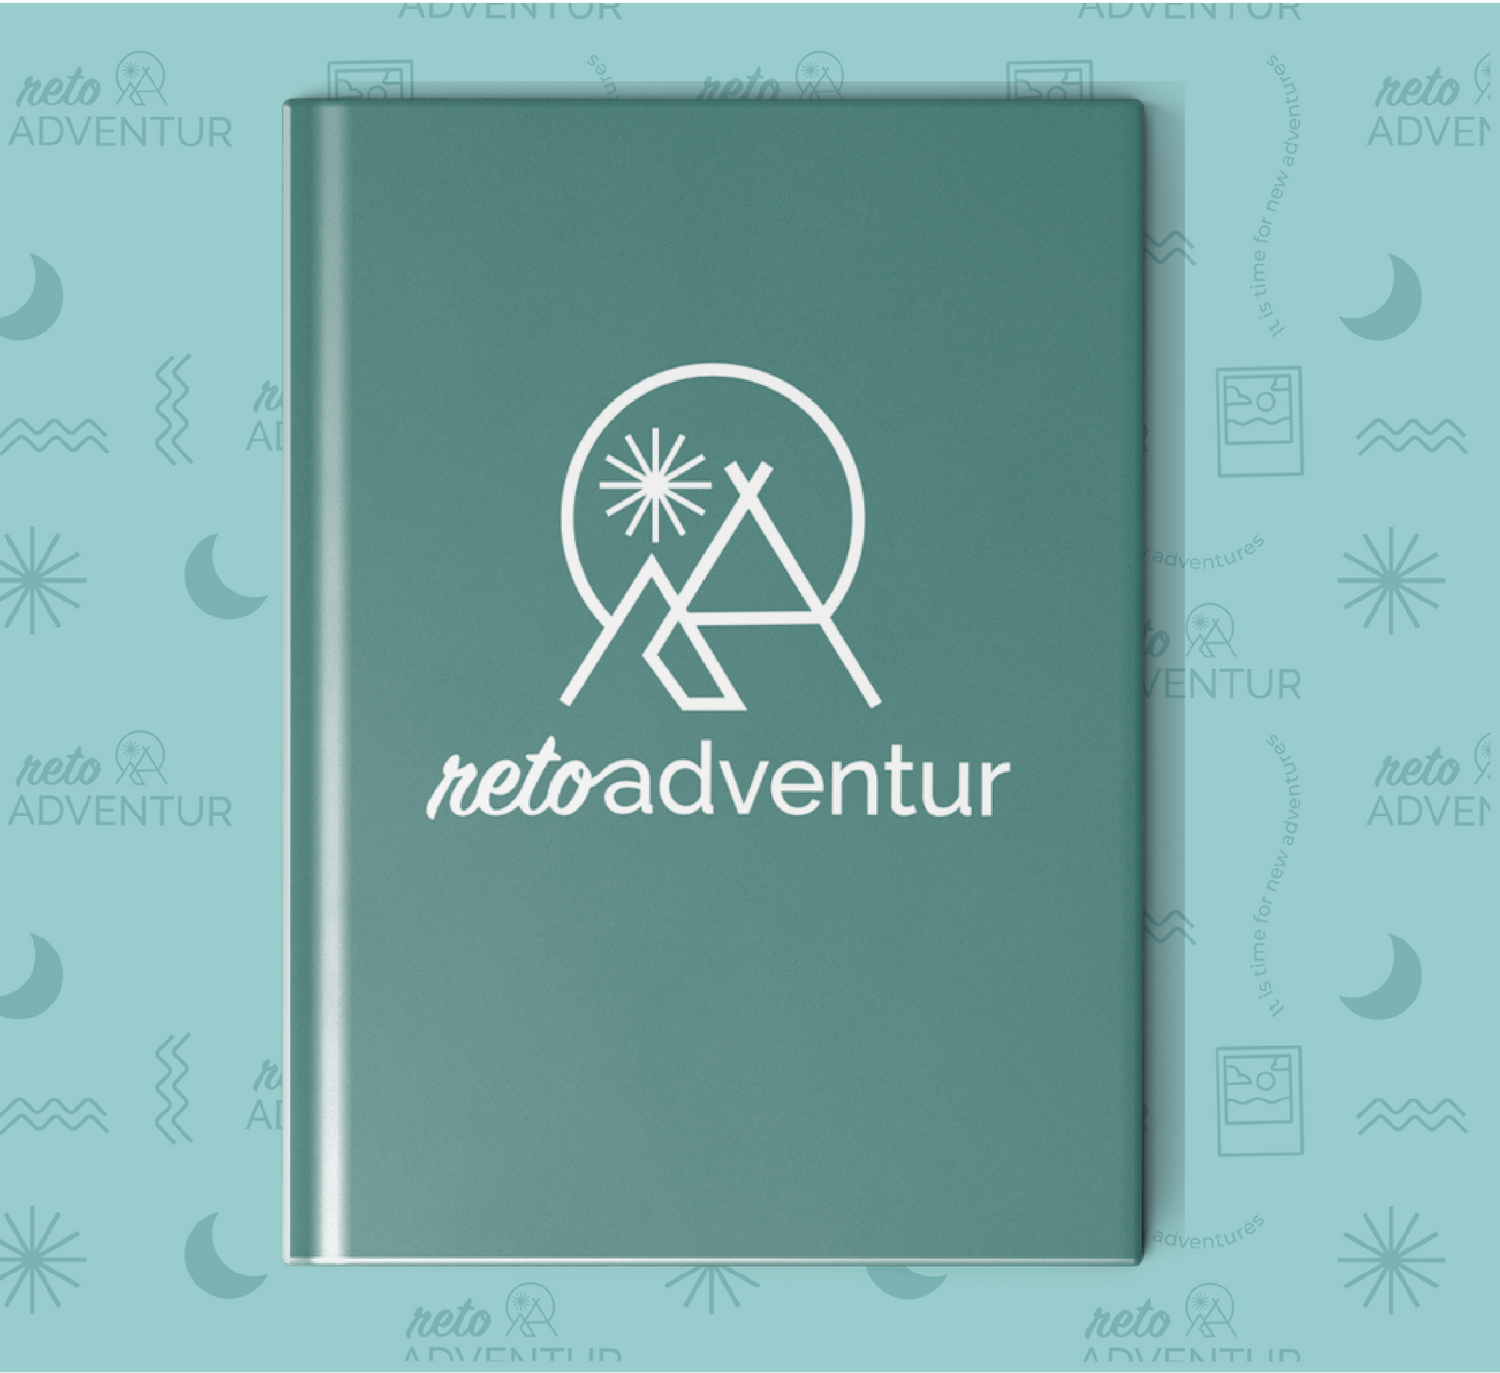 Reto Adventur | Edición Familia